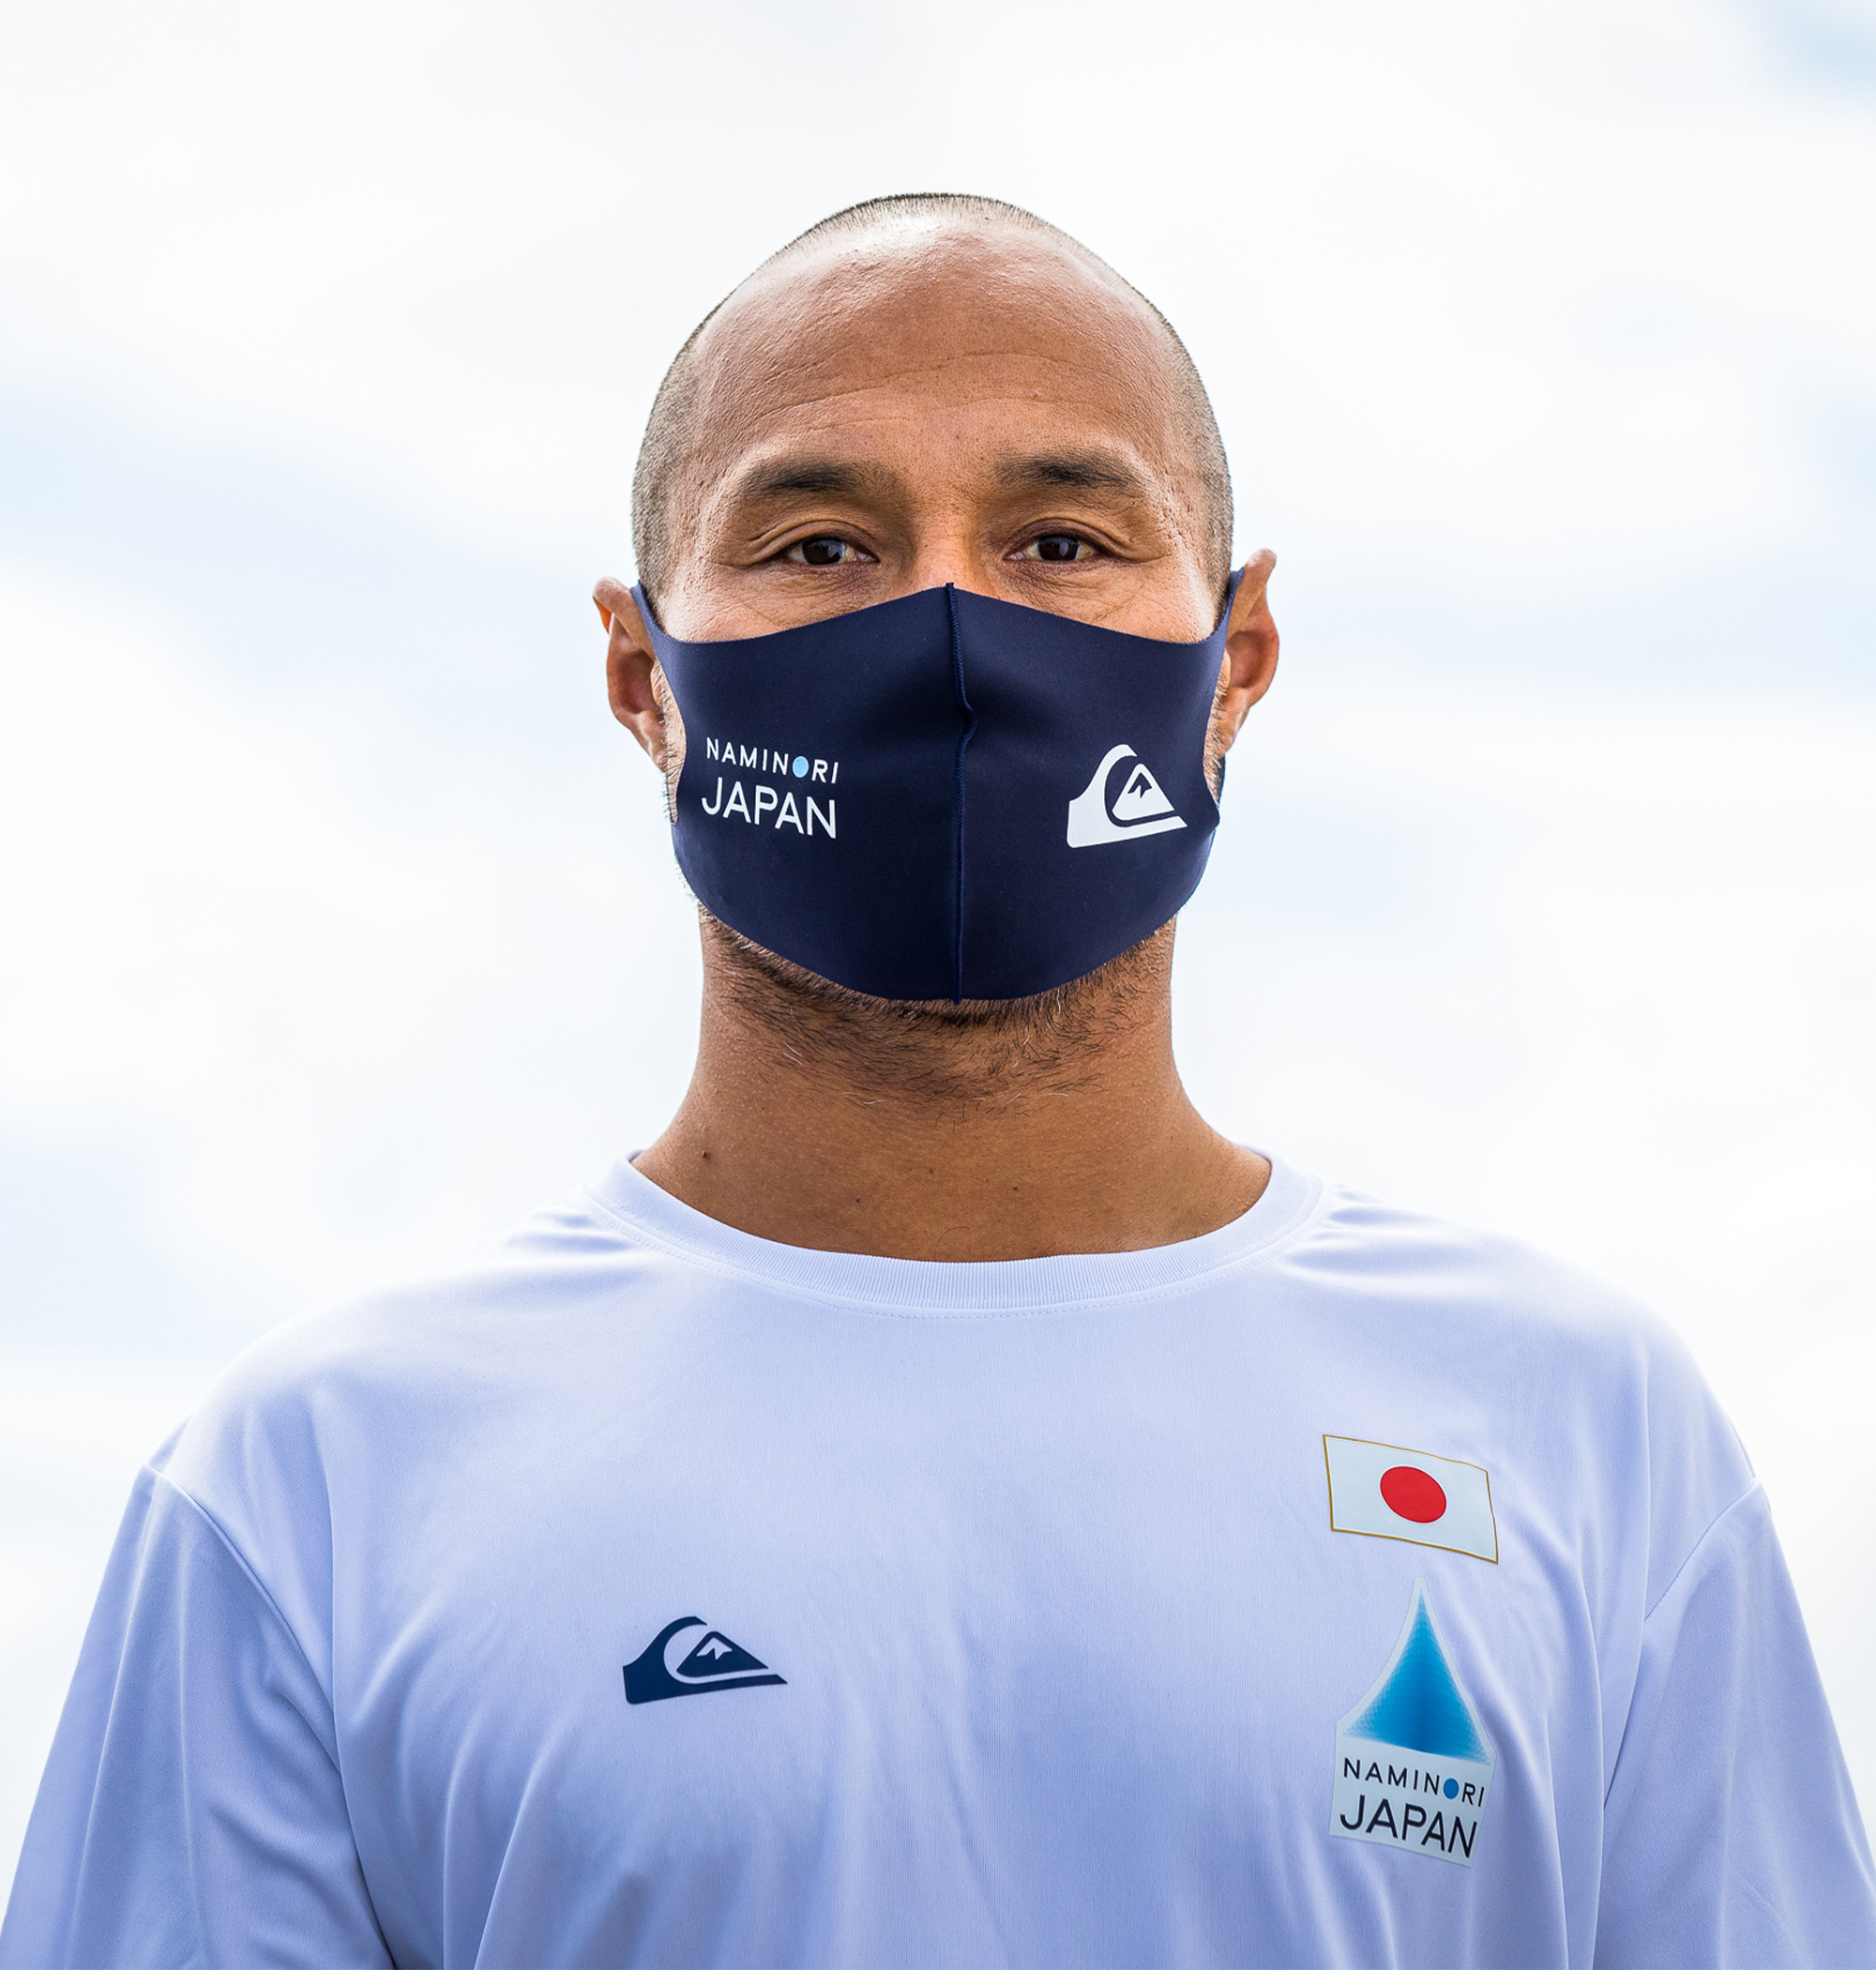  NAMINORI JAPAN TEAM MASK 洗えて繰り返し使えるQUIKSILVERのマスクに、波乗りジャパンモデルが登場！！伸縮・速乾性に優れた2WAYトリコット素材を使用、さらに防臭抗菌加工を施し快適な付け心地を実現しました